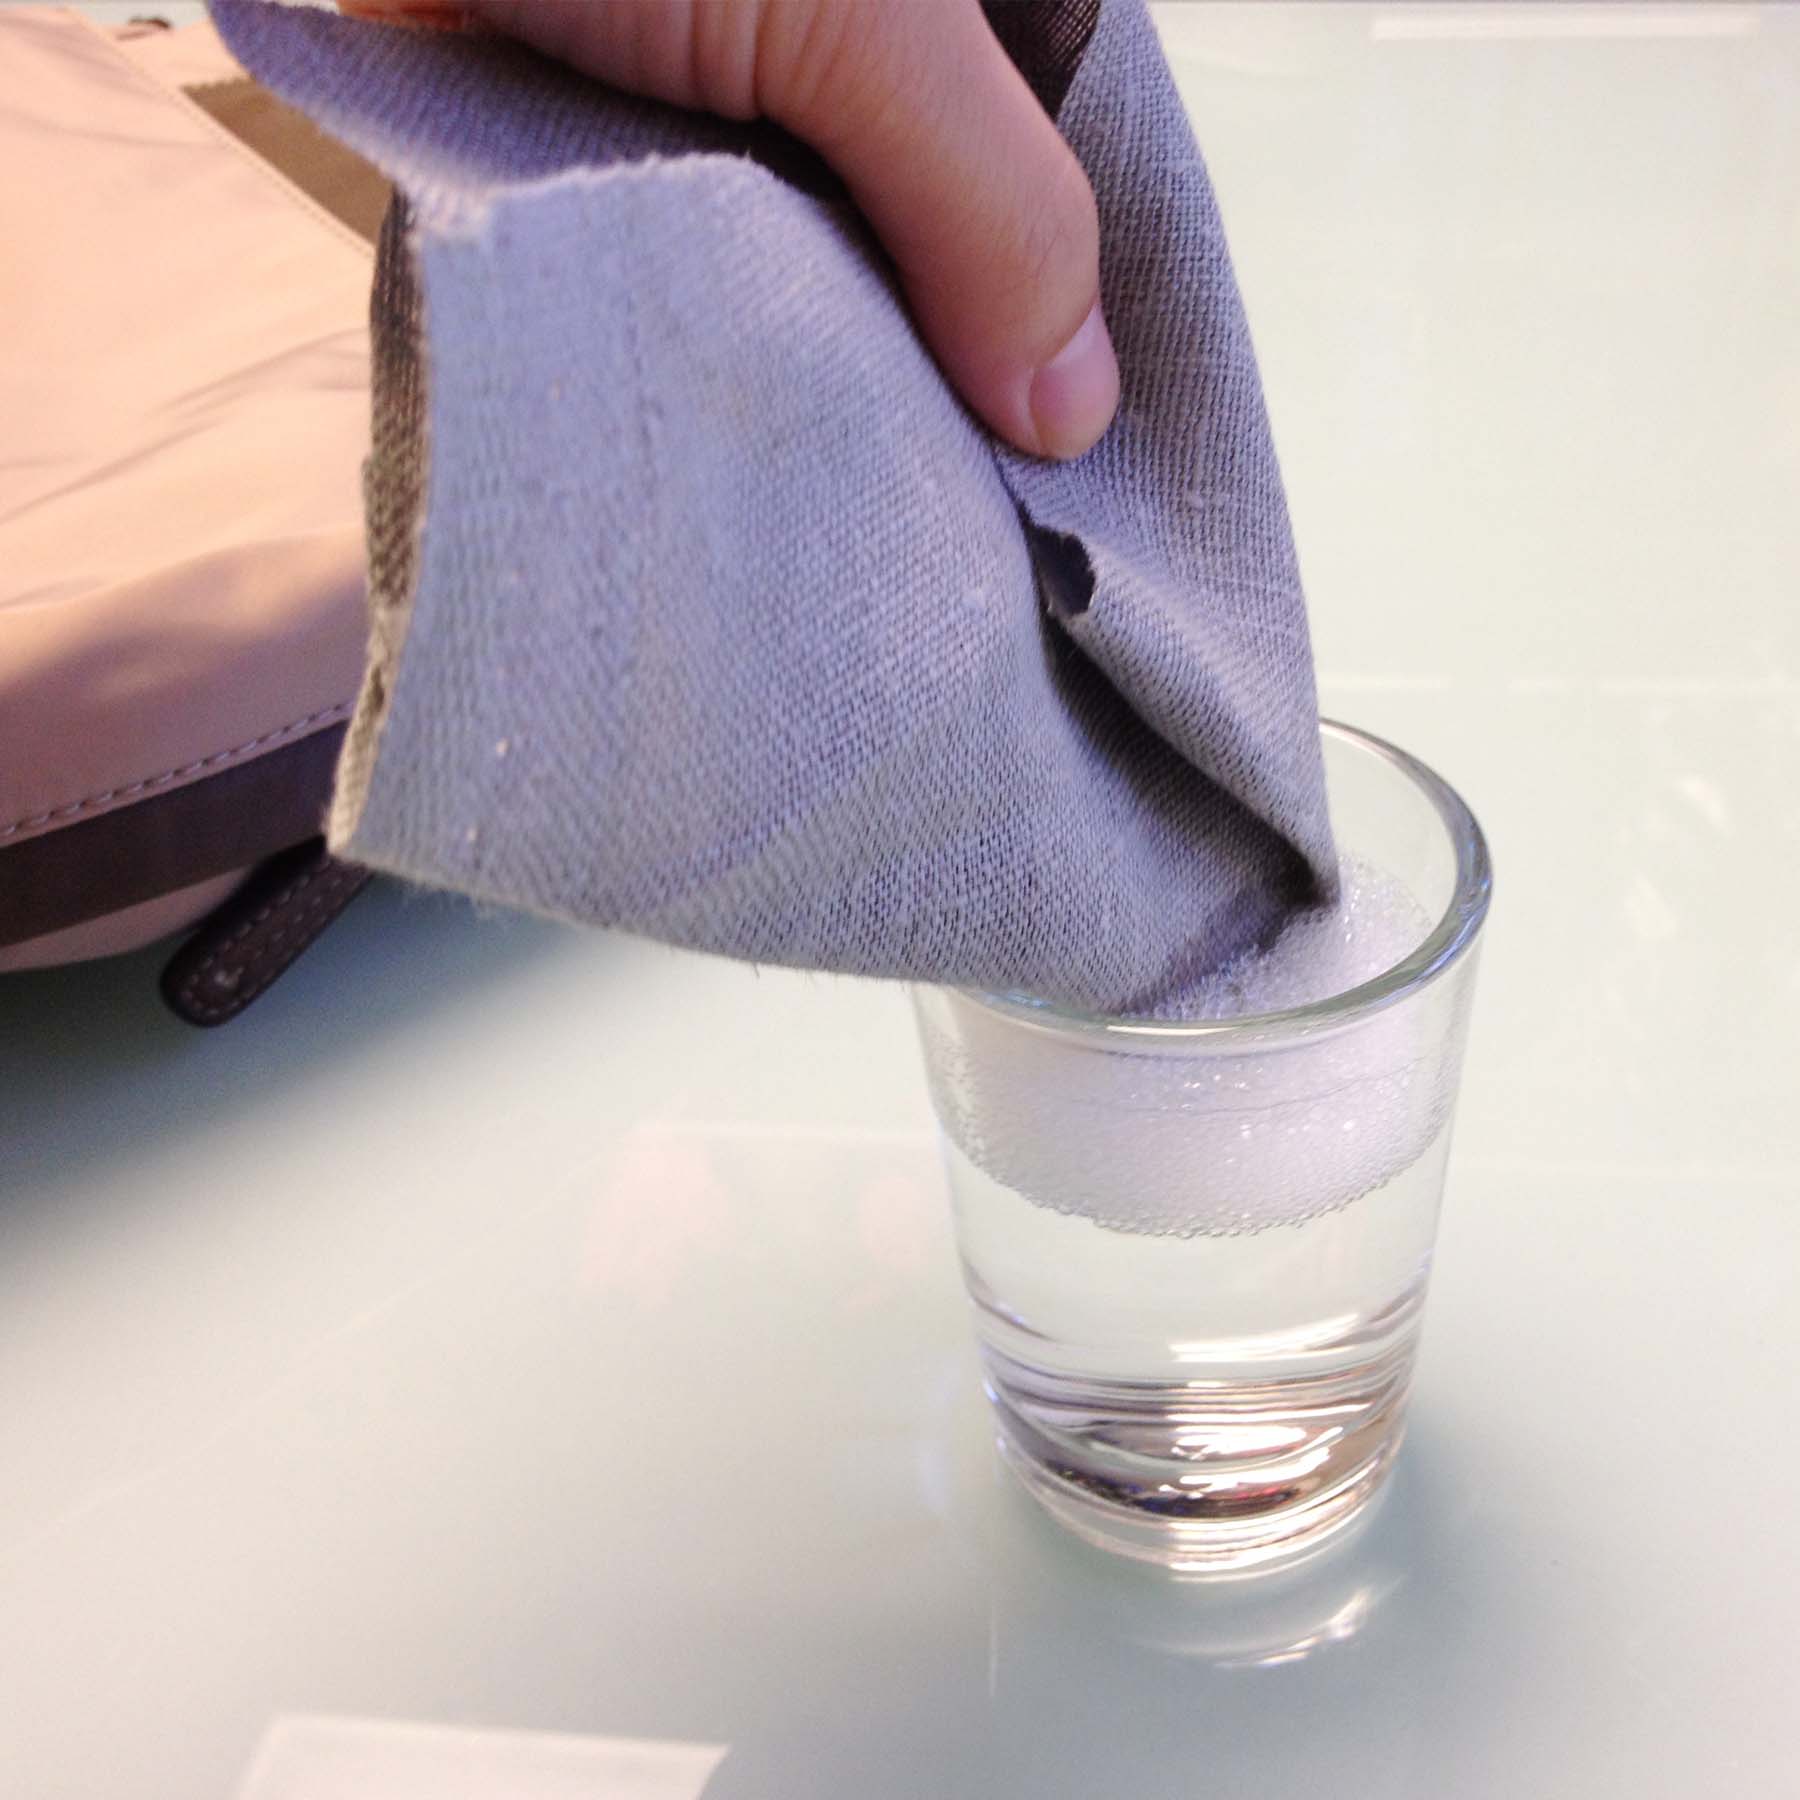 VSTuiDA 2 - Cách làm sạch túi da đơn giản tại nhà